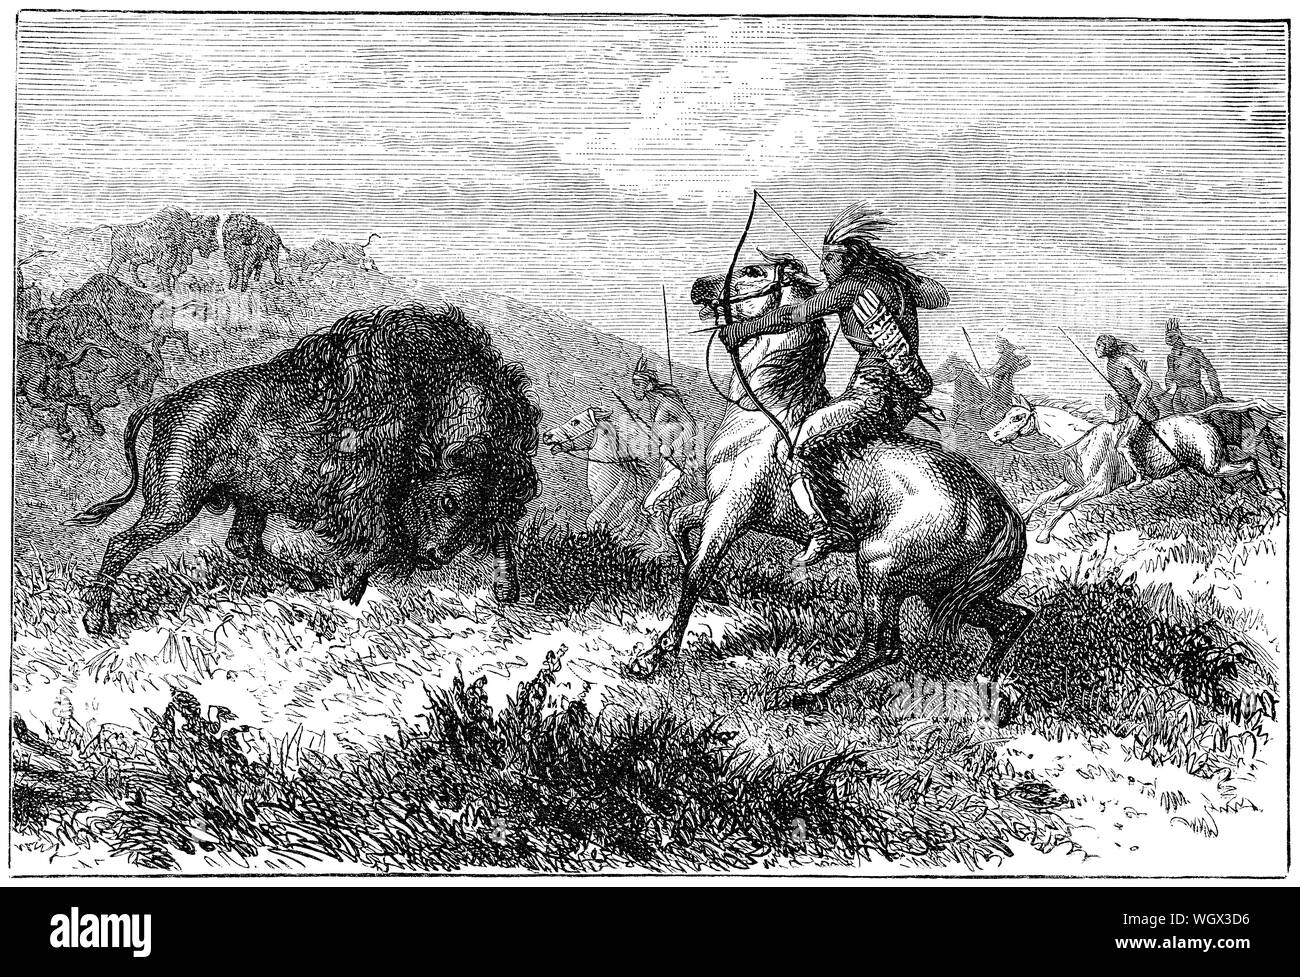 C1876 incisione di nativi americani a caccia di bisonti. Foto Stock